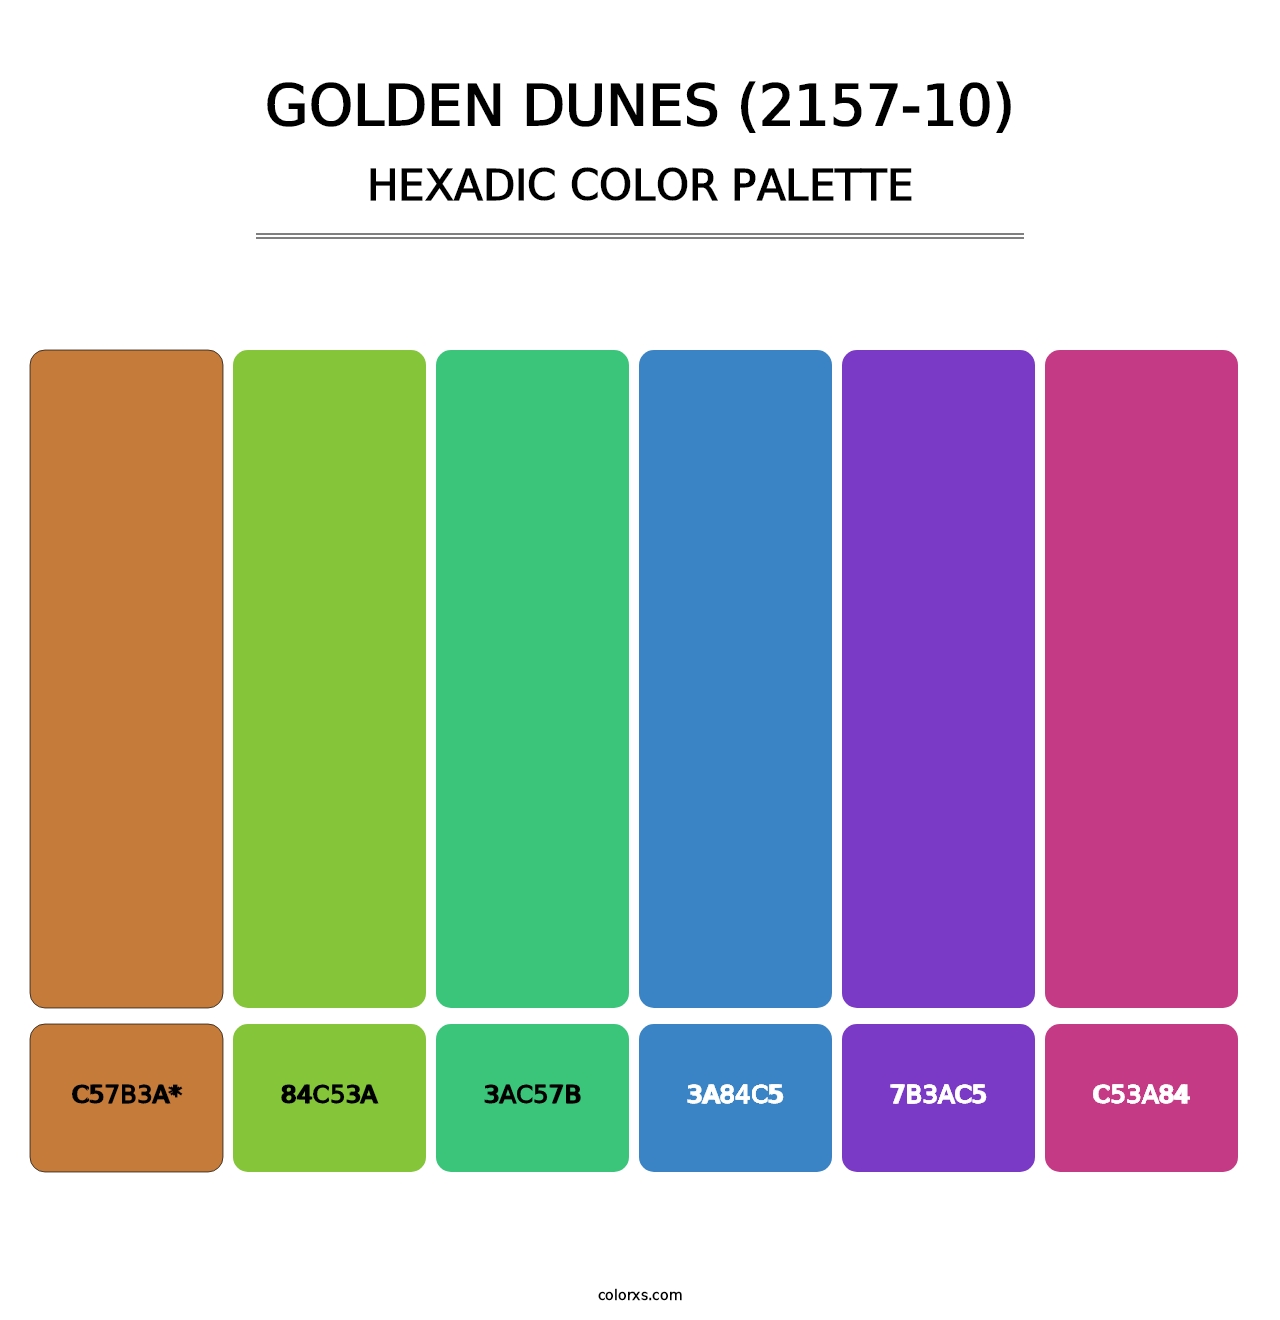 Golden Dunes (2157-10) - Hexadic Color Palette